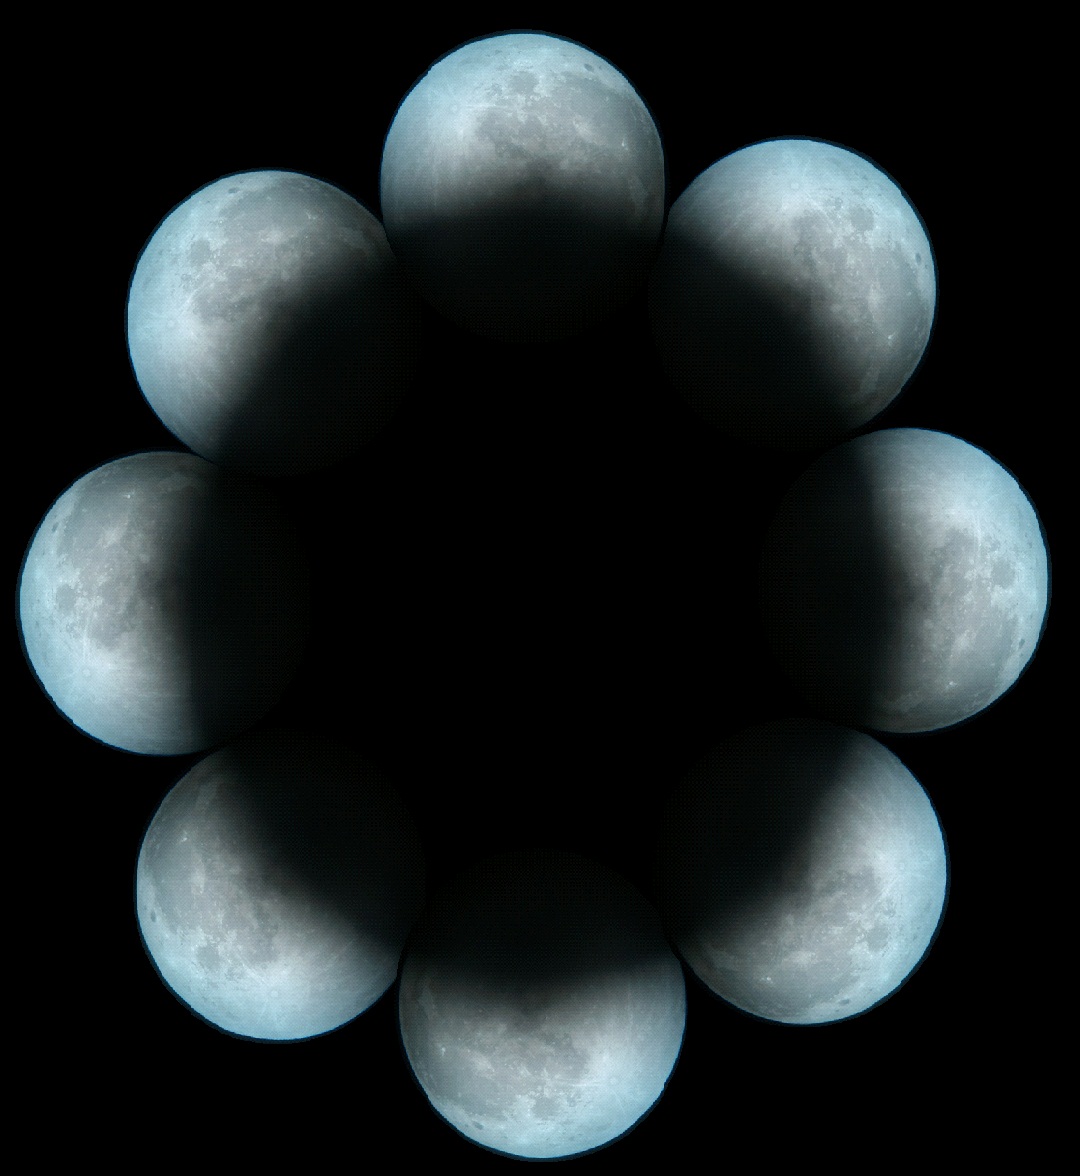 ماه, پرده ای برای نمایش سایه زمین